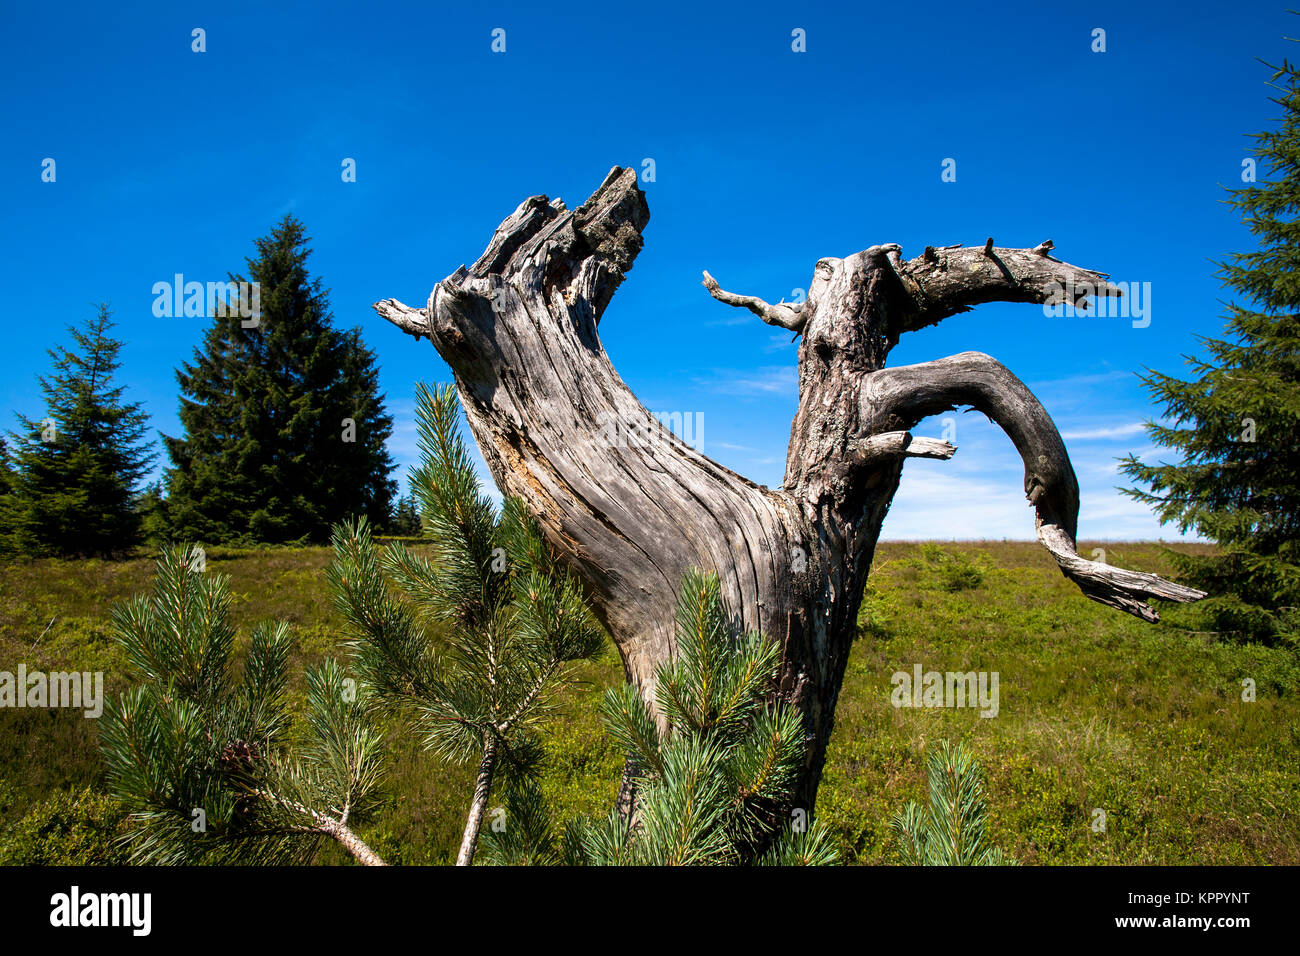 Germany, Sauerland region, the mountain Kahler Asten near Winterberg, old gnarled trunk of a pine.  Deutschland, Sauerland, auf dem Kahlen Asten bei W Stock Photo